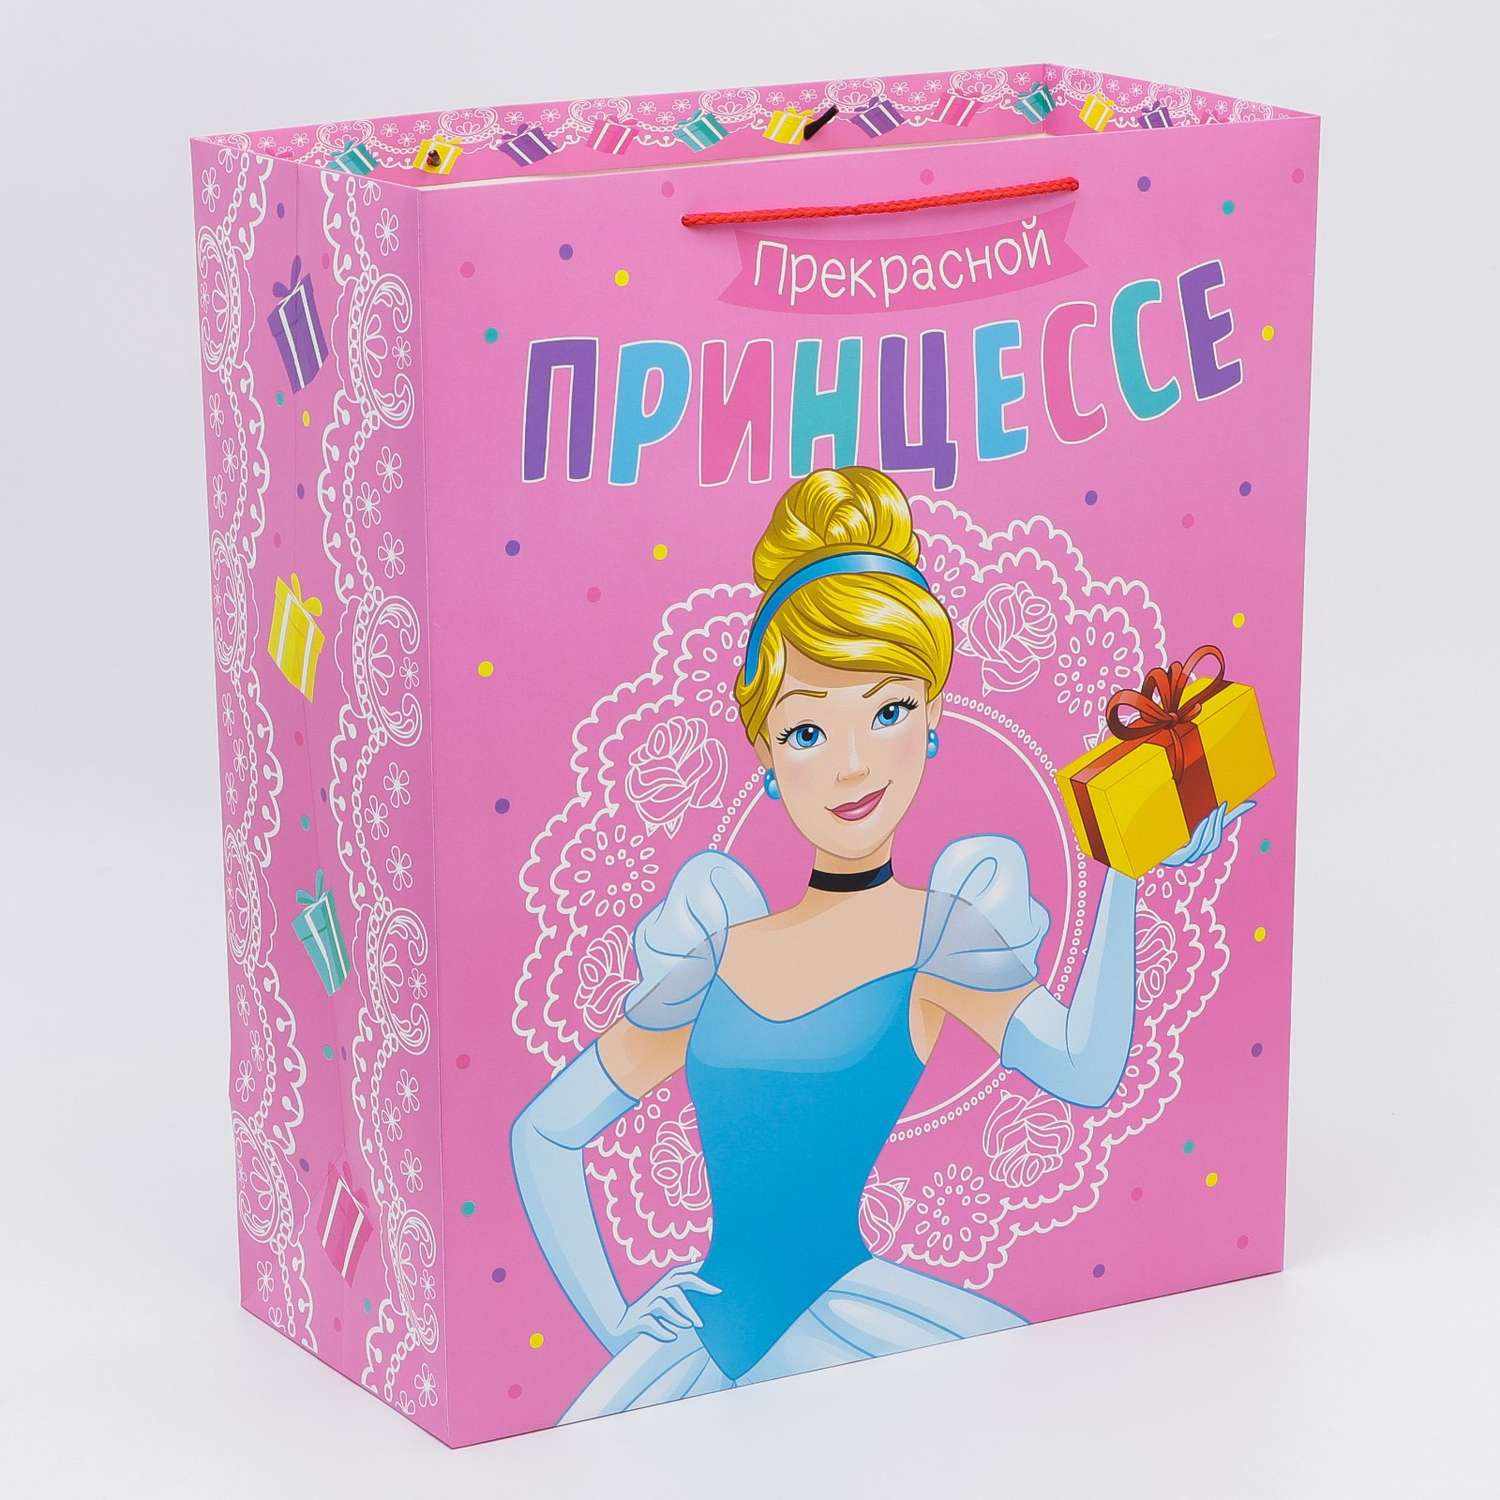 Пакет подарочный Disney «Прекрасной принцессе!» - фото 2